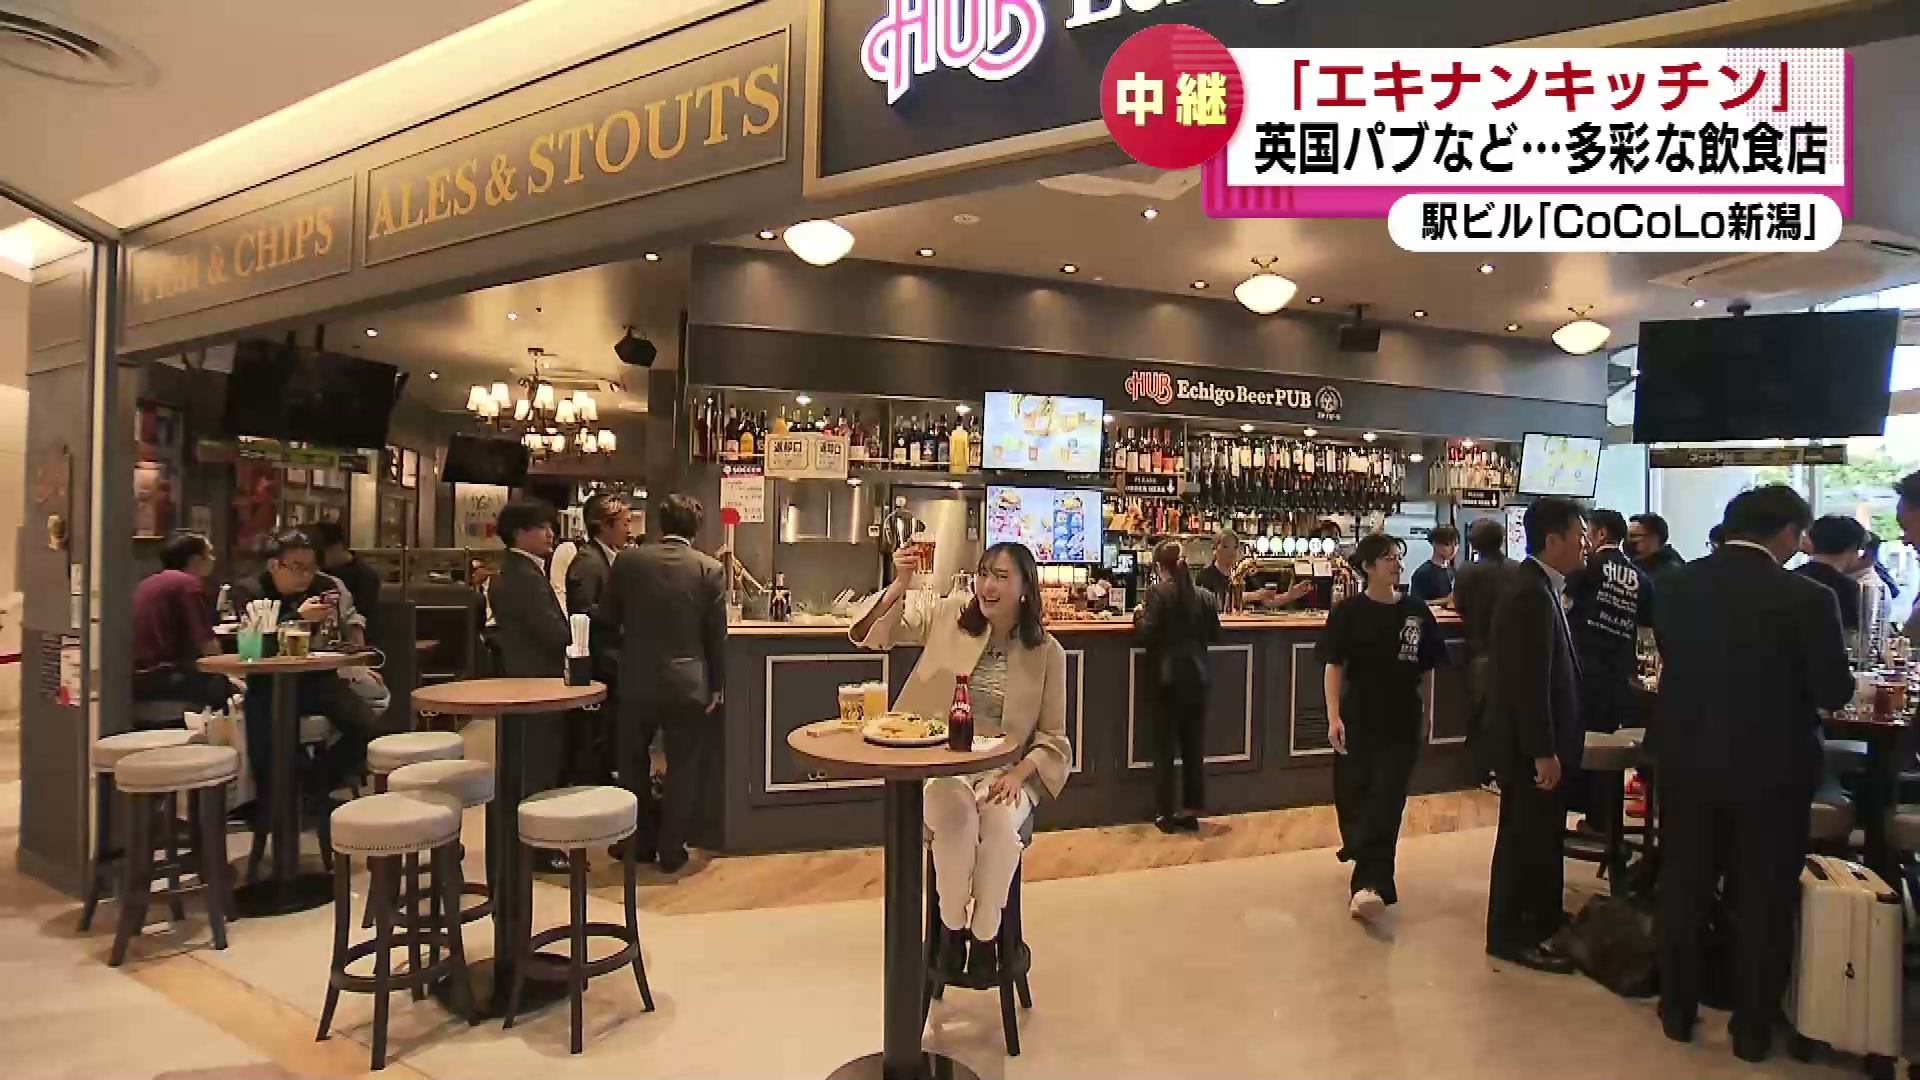 JR新潟駅に新たな飲食店街がオープン　その多くが県内初出店や新業態　和食からエスニック料理まで　《新潟》